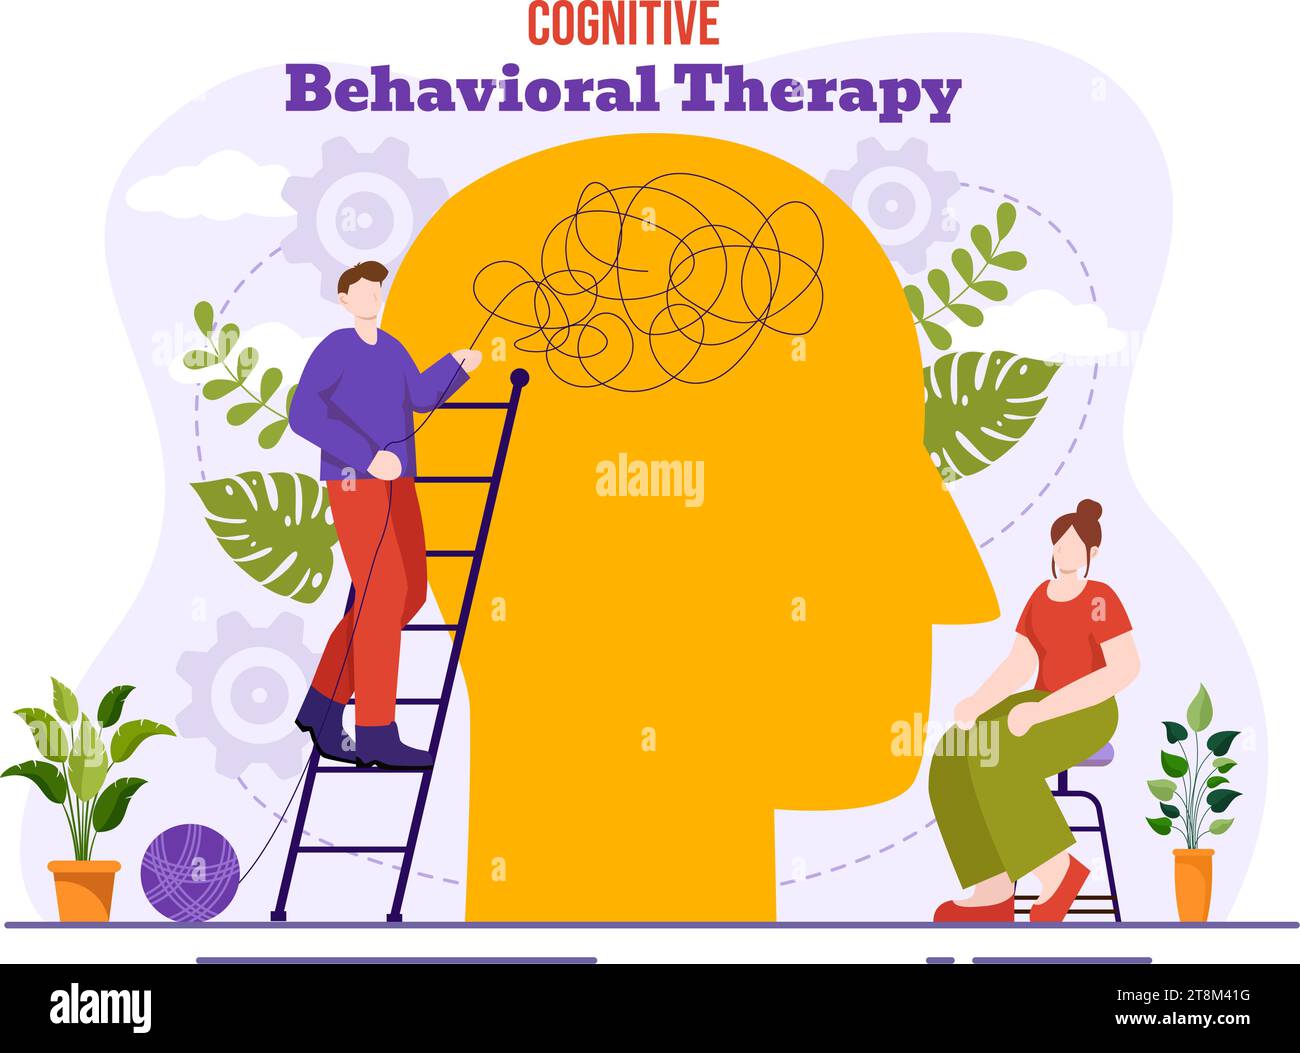 CBT oder kognitive Verhaltenstherapie Vektor-Illustration mit Person Verwalten Sie ihre Probleme Emotionen, Depression oder Mindset im Hintergrund der psychischen Gesundheit Stock Vektor